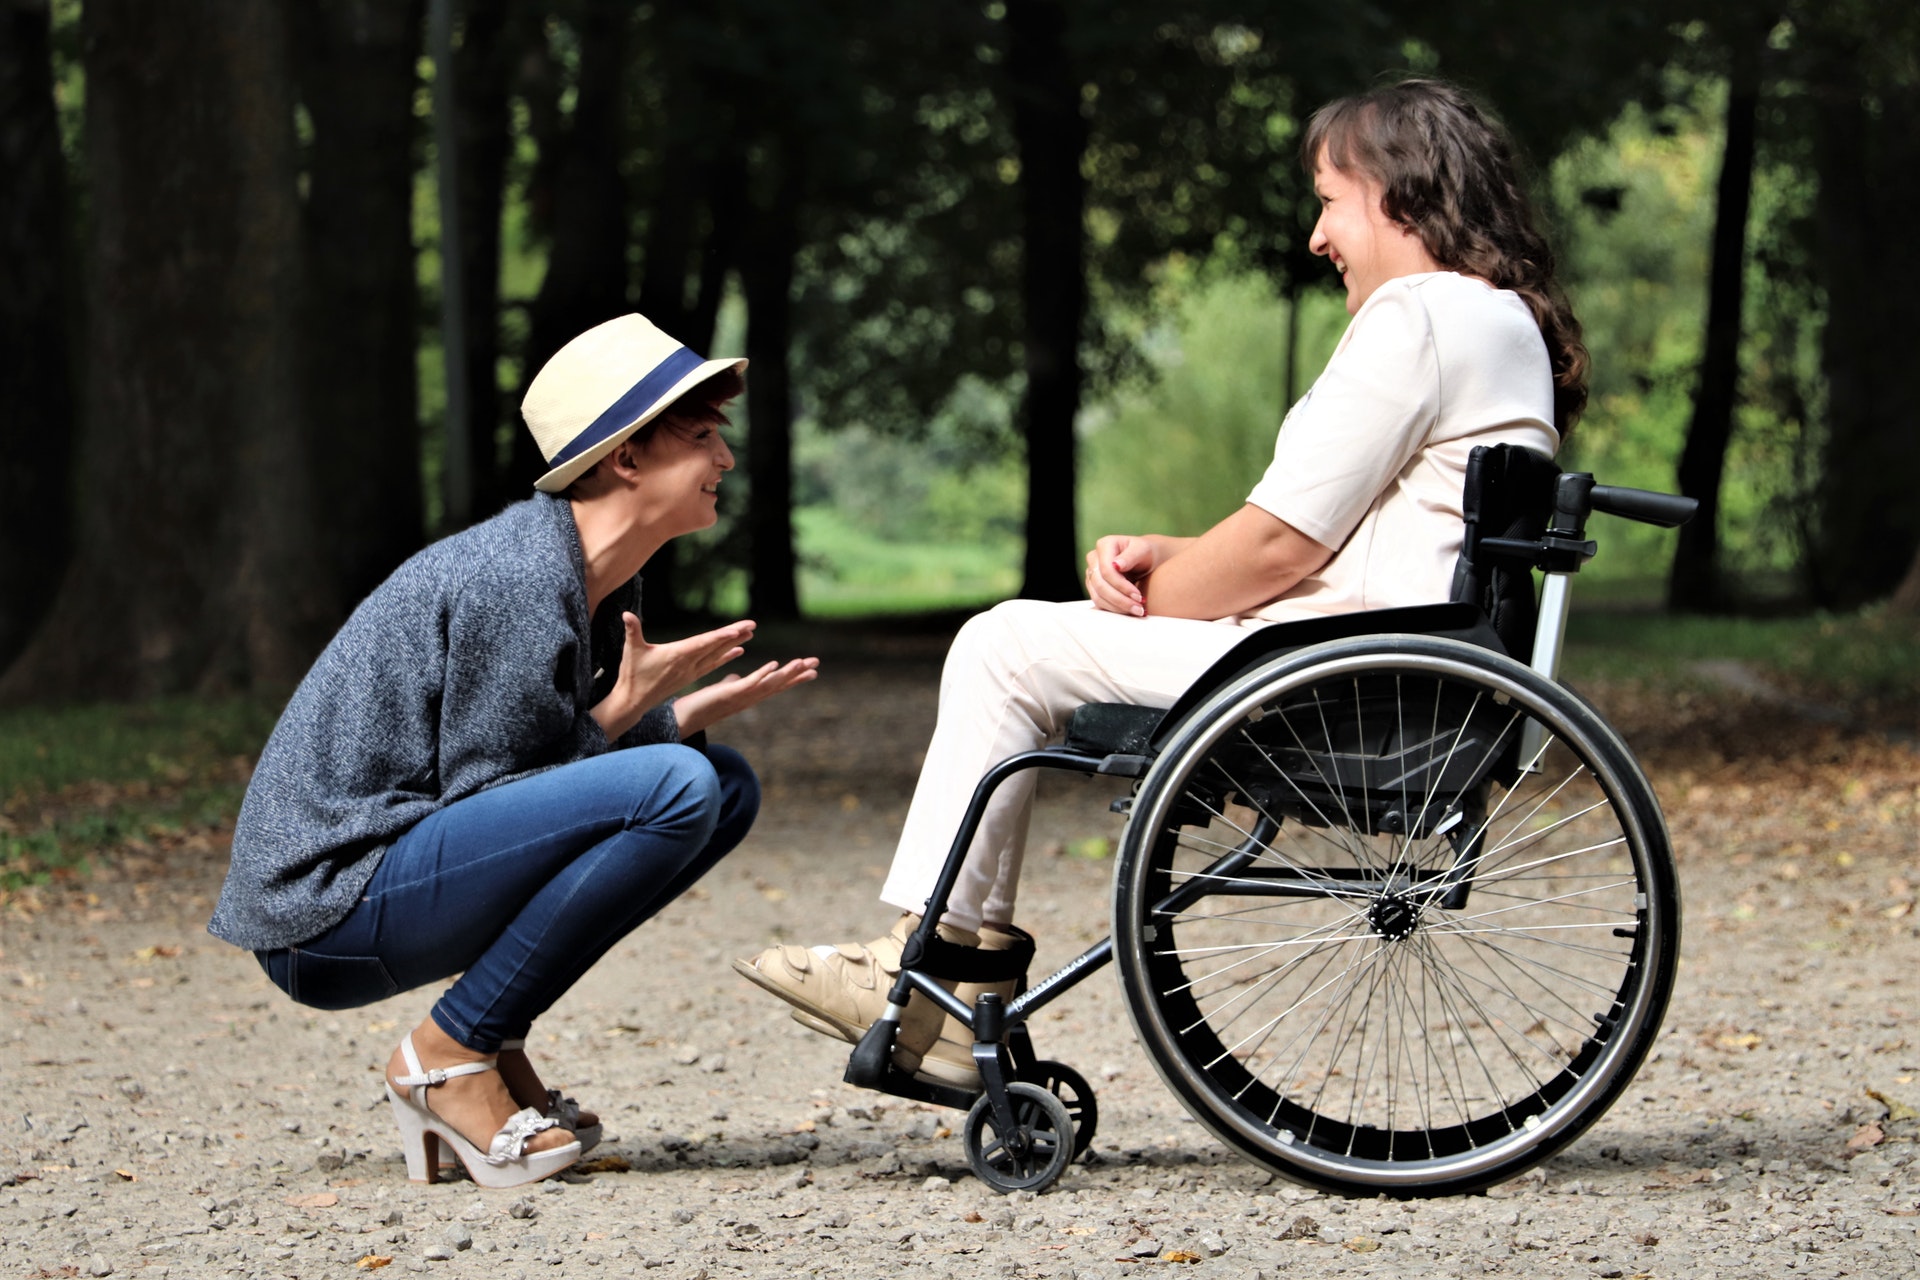 Imagen en la que aparecen dos personas sonrientes y felices, una de ellas en posición de cuclillas frente a la otra, que se encuentra sobre una silla de ruedas